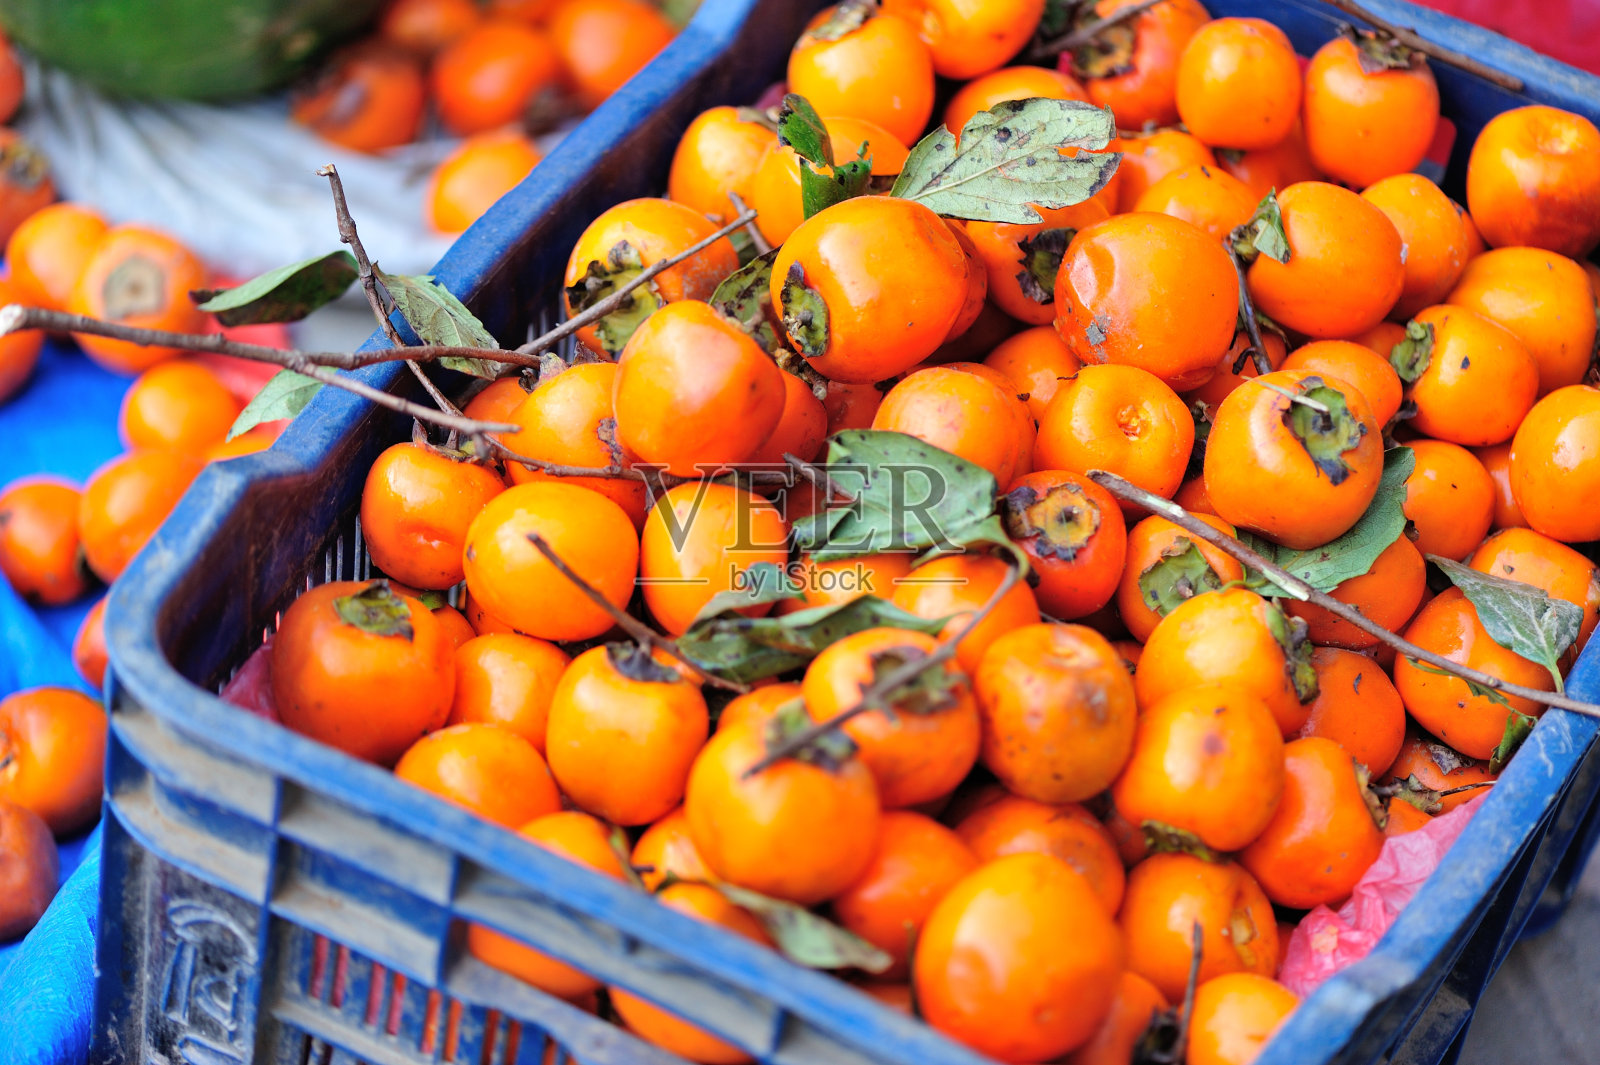 尼泊尔街头商店出售的新鲜有机柿子照片摄影图片